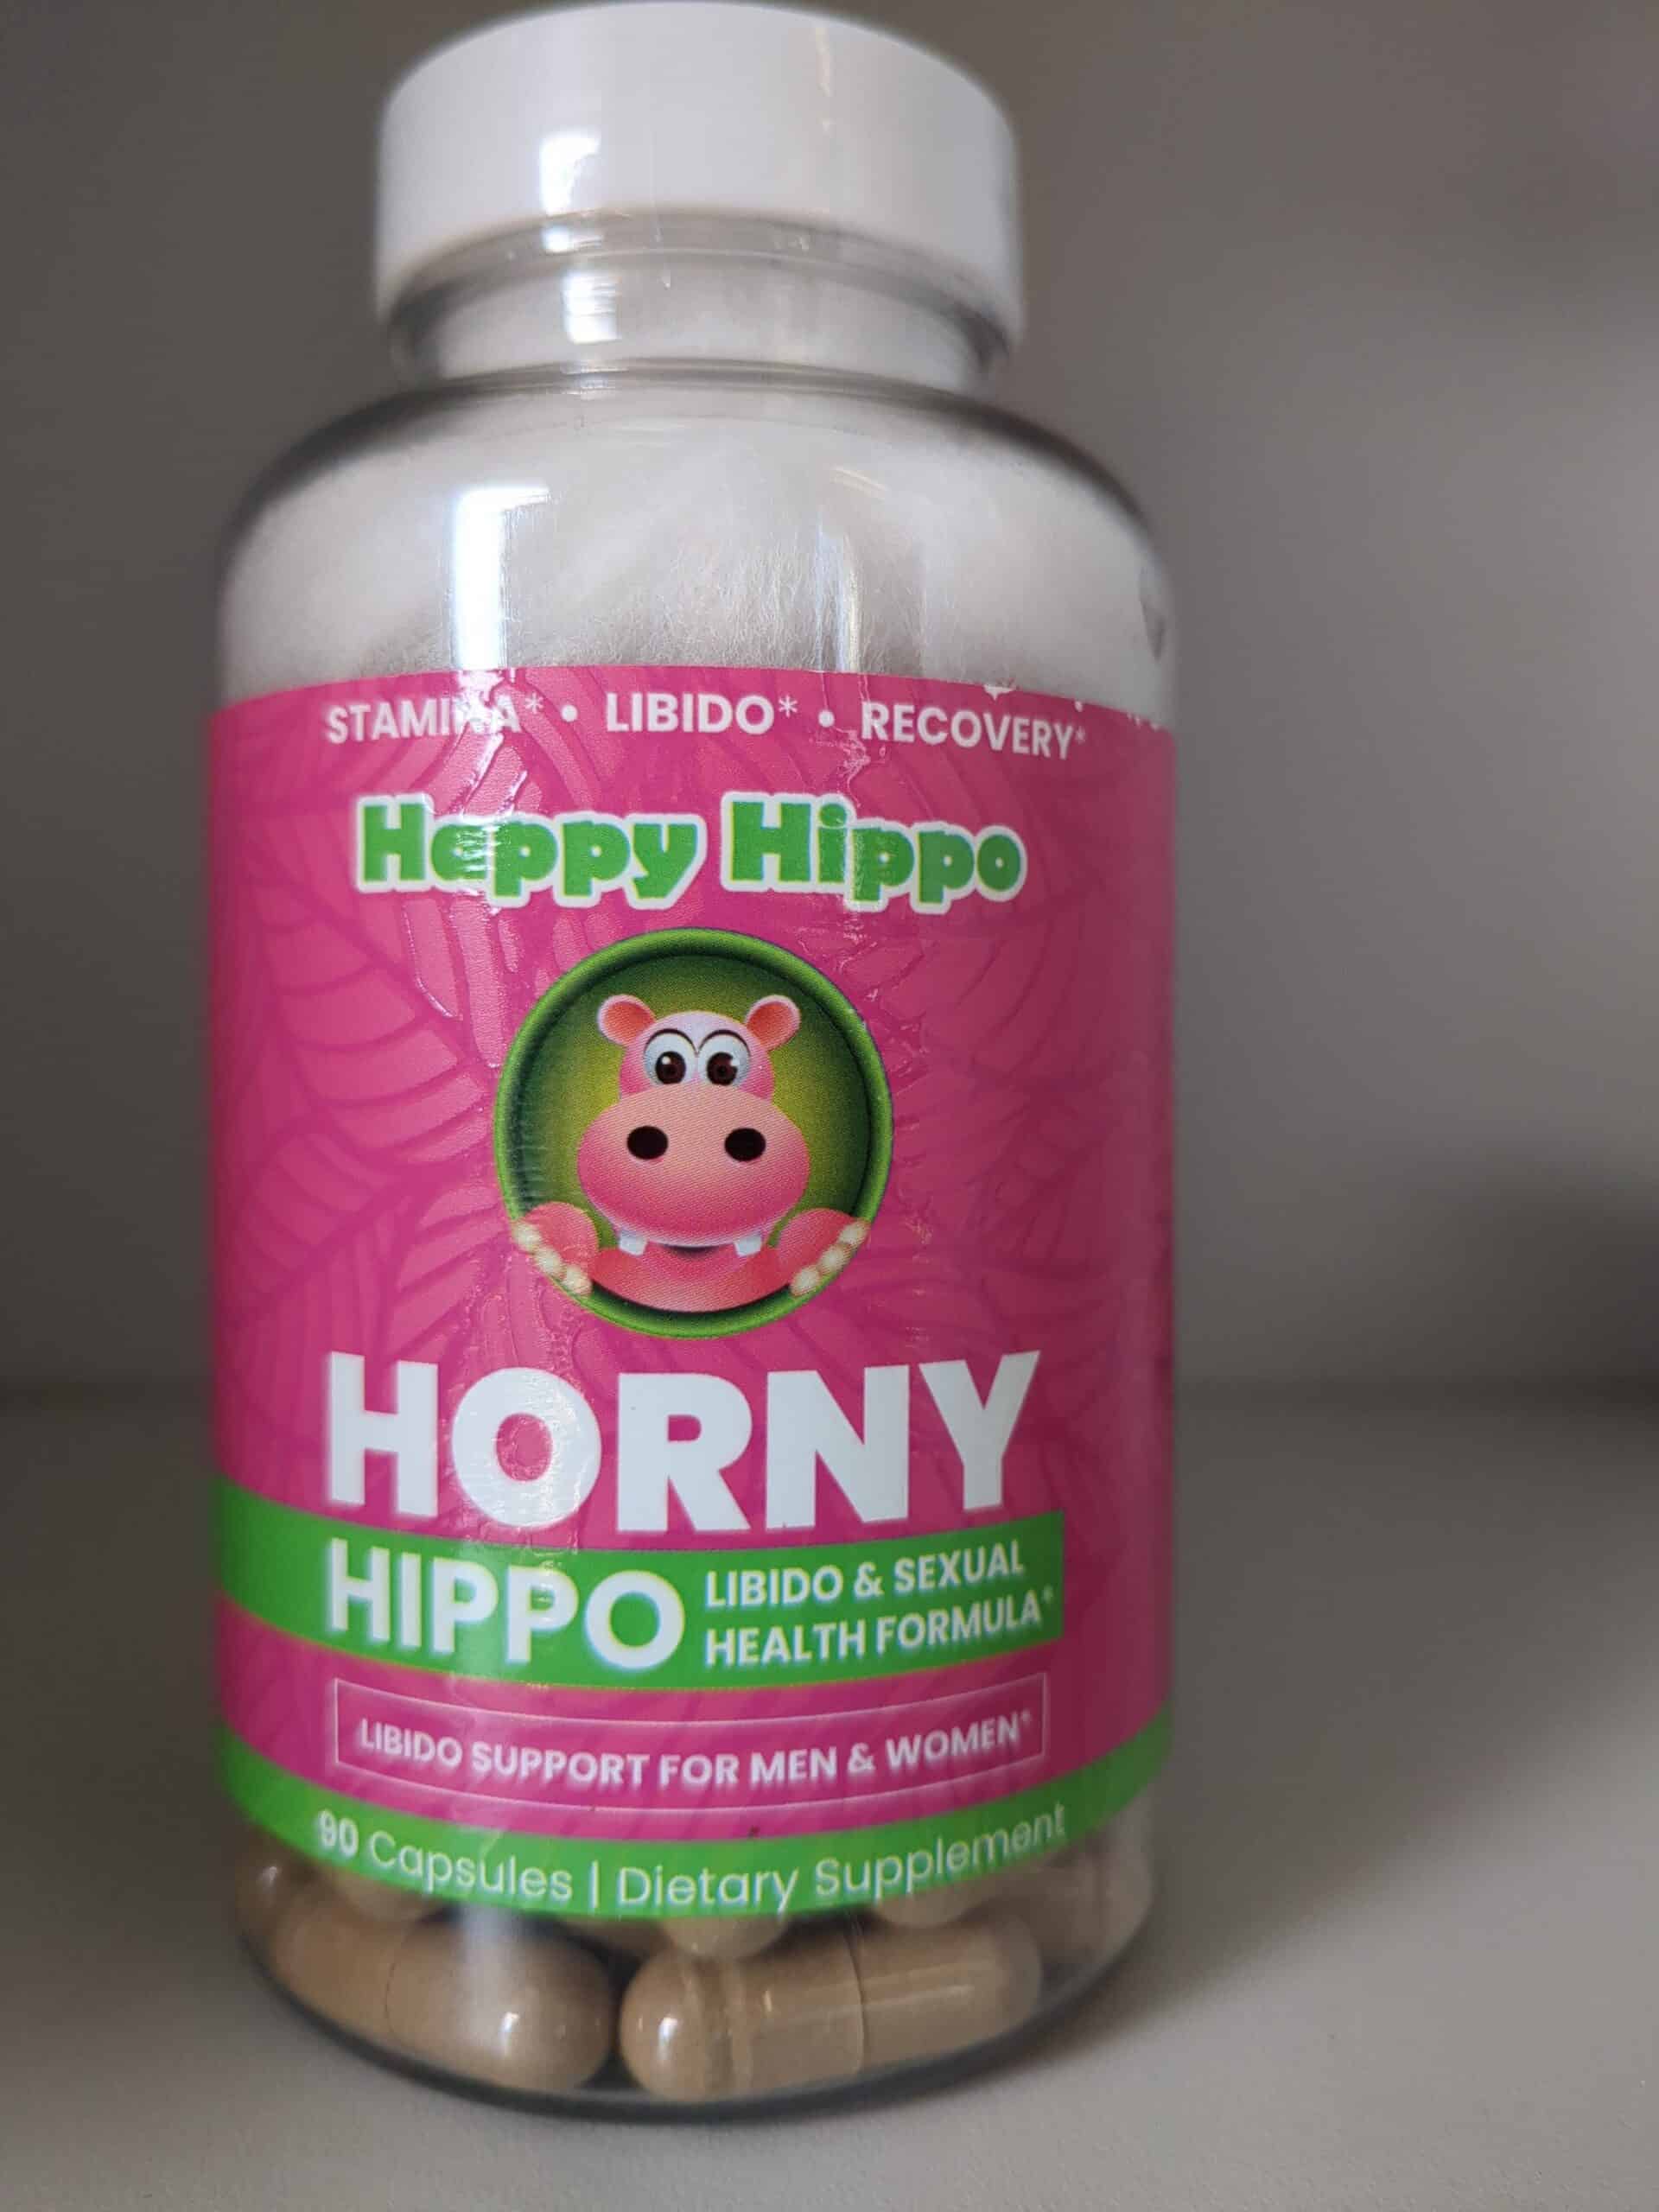 Horny horny hippo